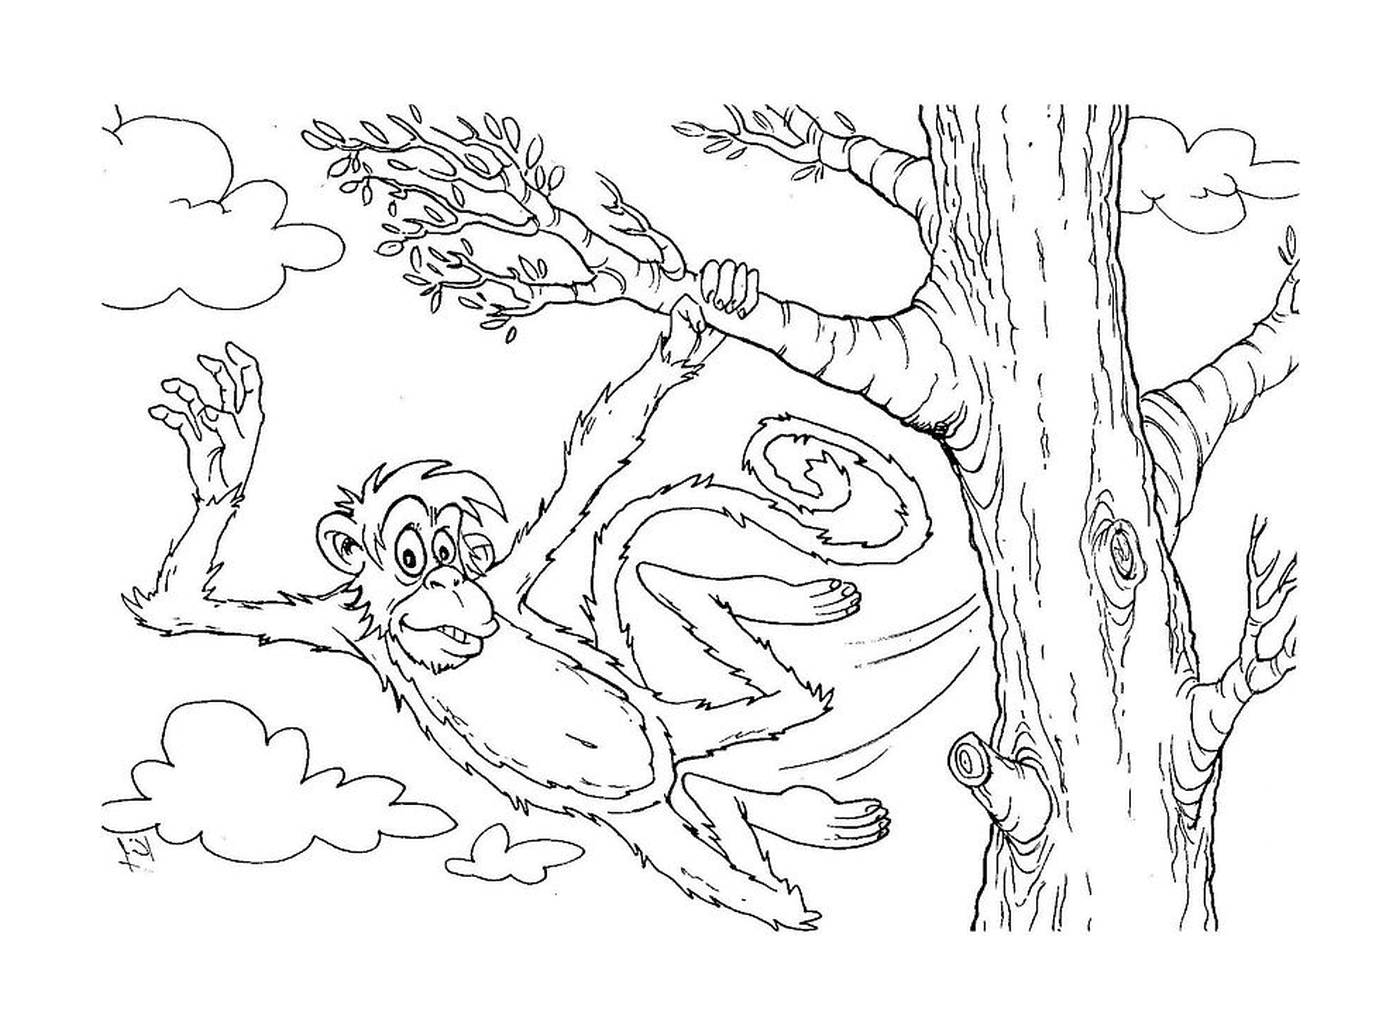  Обезьяна, висящая на дереве 